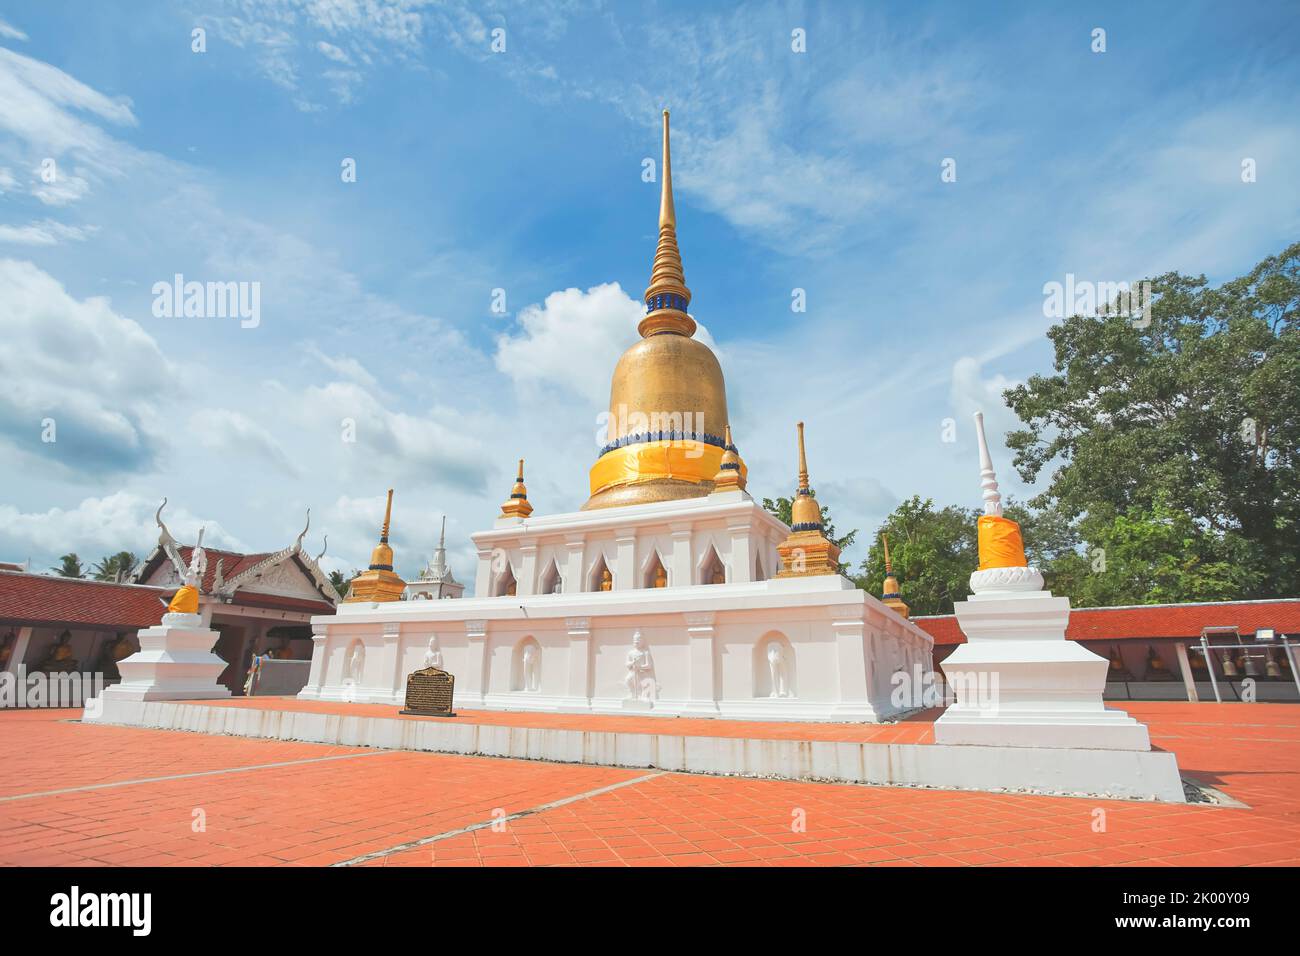 Phra That Sawi est l'une des destinations de voyage situées à Wat Phra dans la province de Sawi Chumphon, en Thaïlande. Banque D'Images